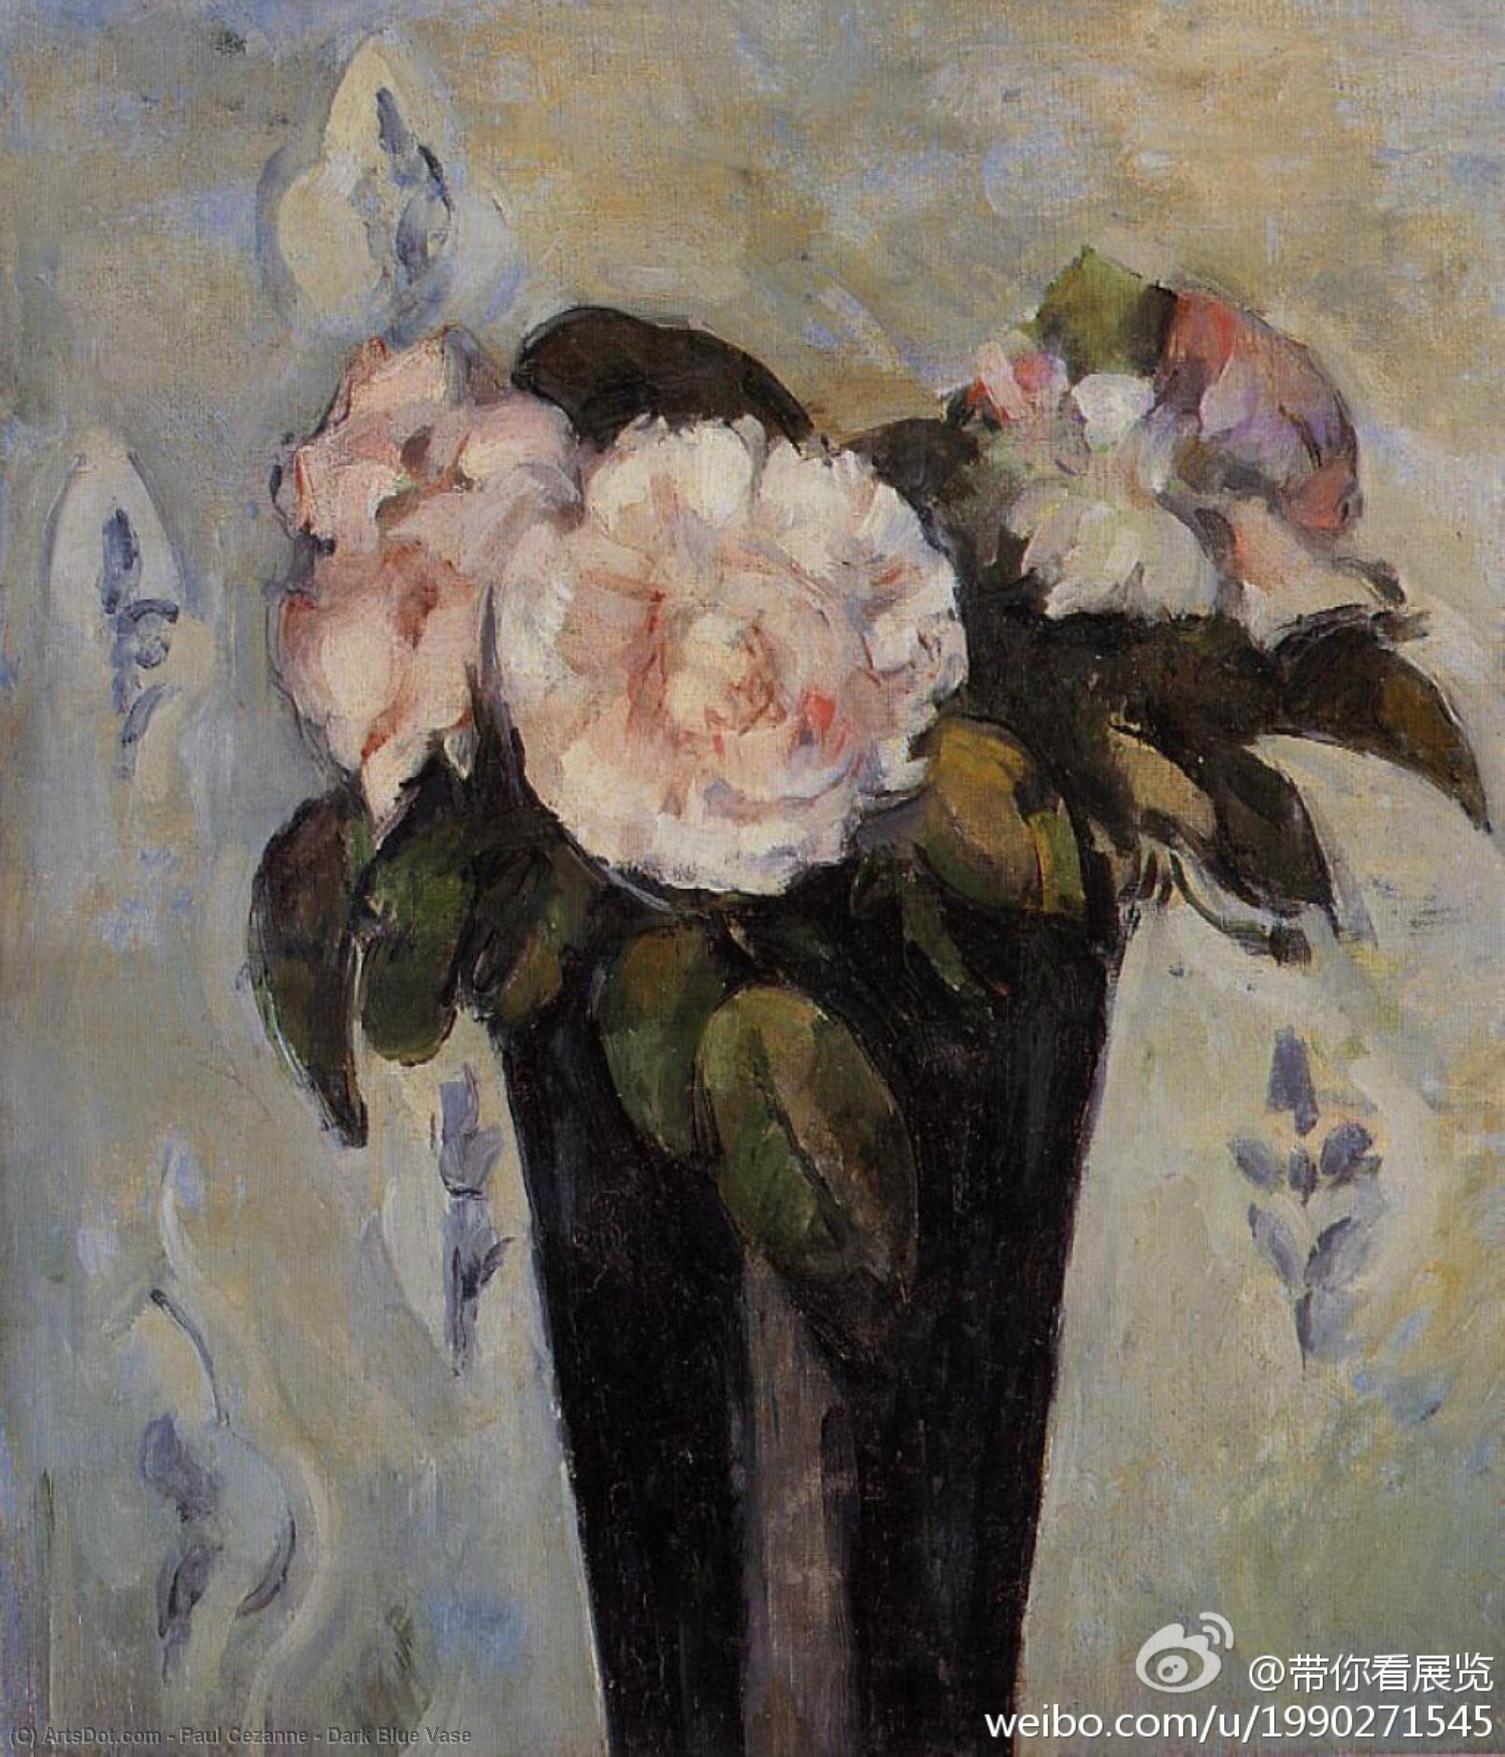 WikiOO.org - Enciclopédia das Belas Artes - Pintura, Arte por Paul Cezanne - Dark Blue Vase